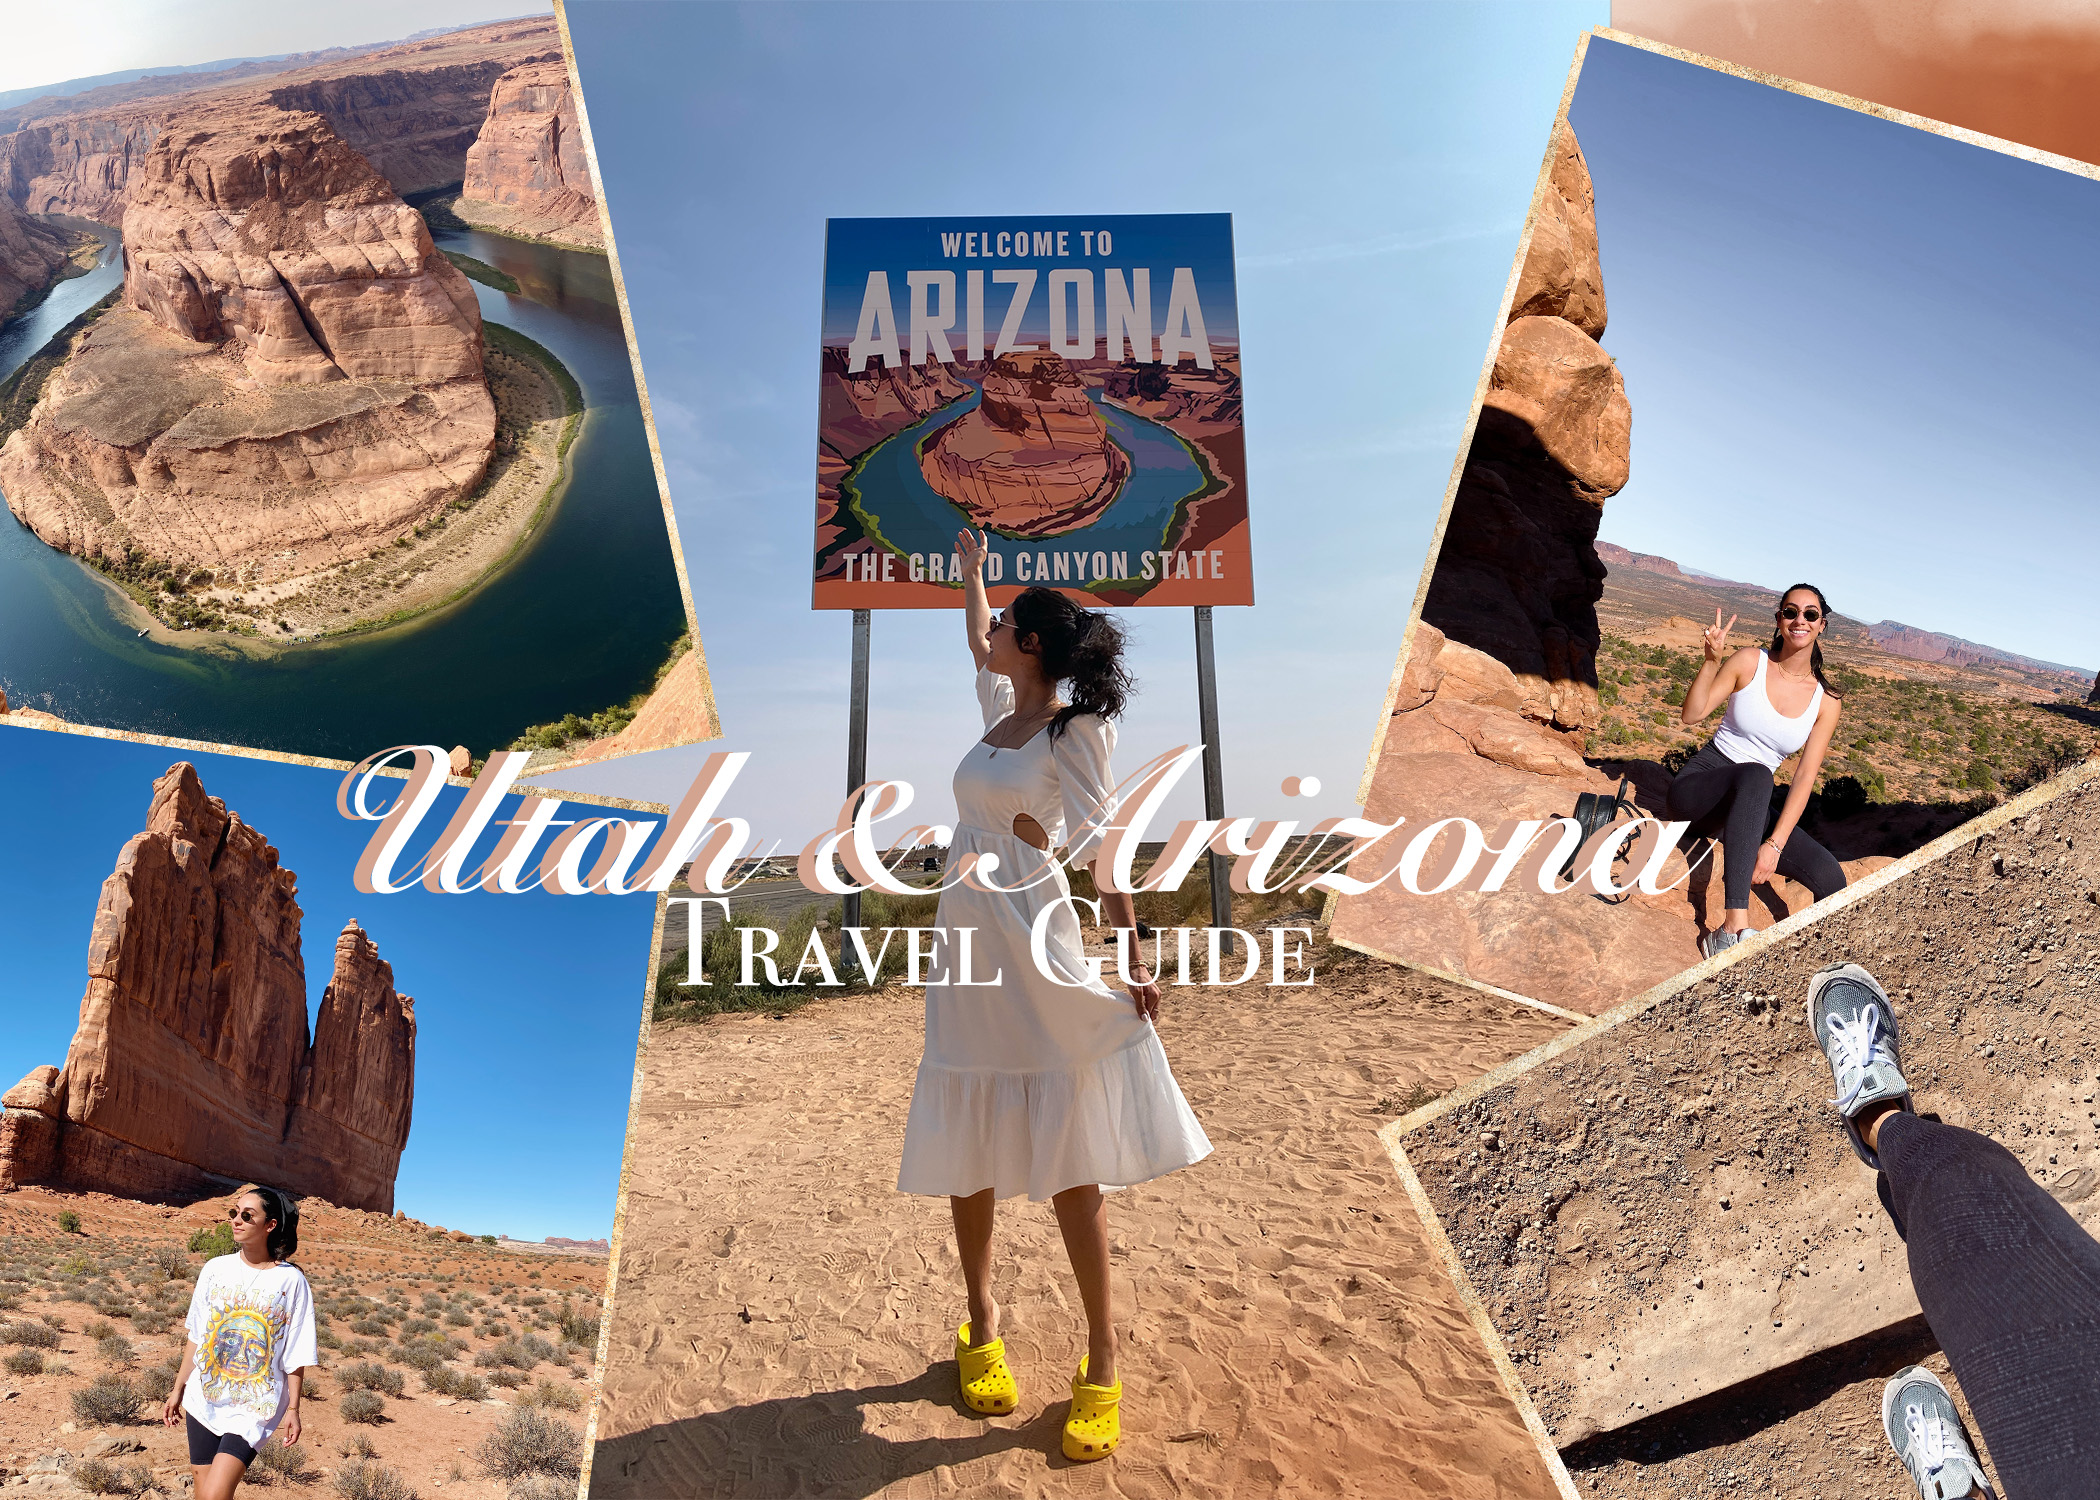 Utah & Arizona Travel Guide!